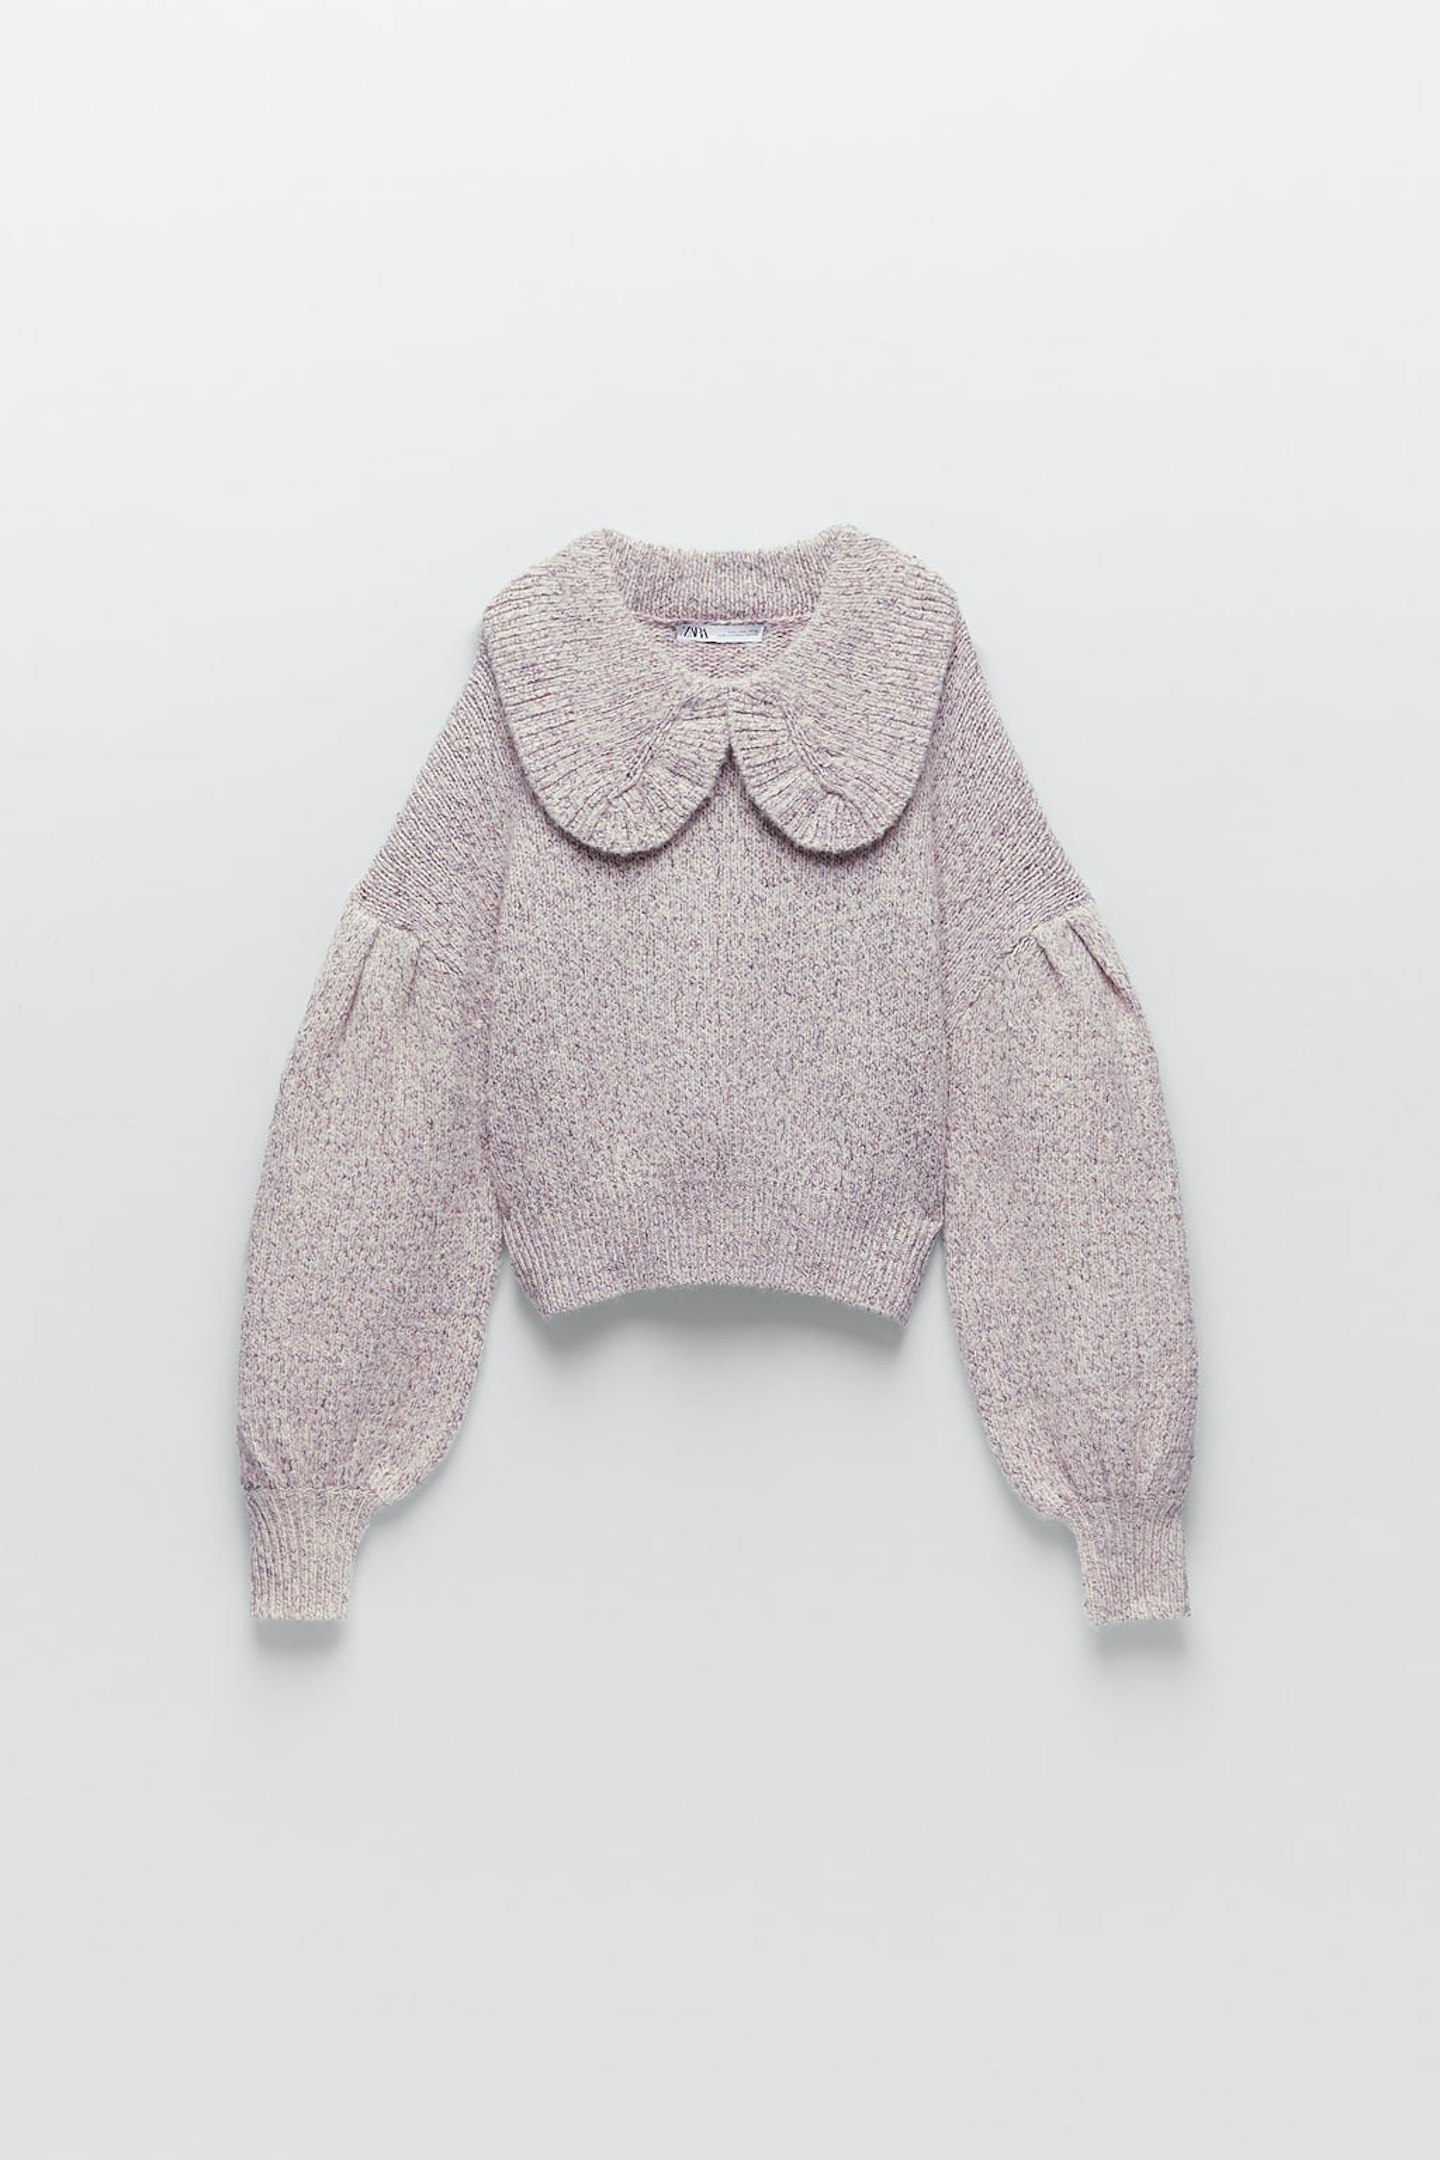 Zara, Sweater with a ruffled Peter Pan collar, £25.99